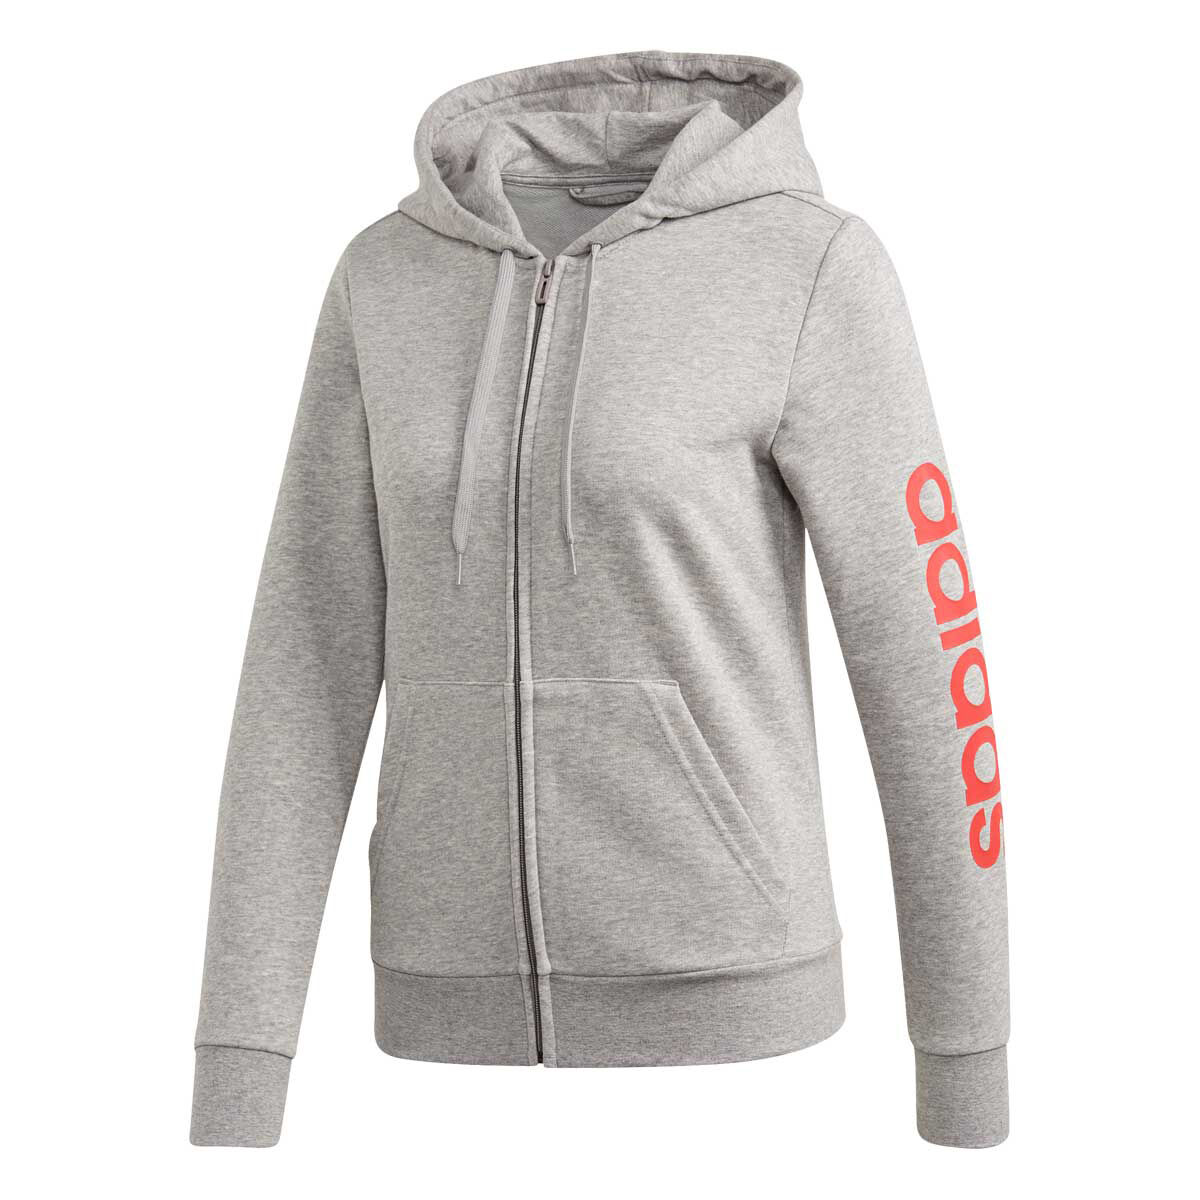 adidas zip hoodie grey